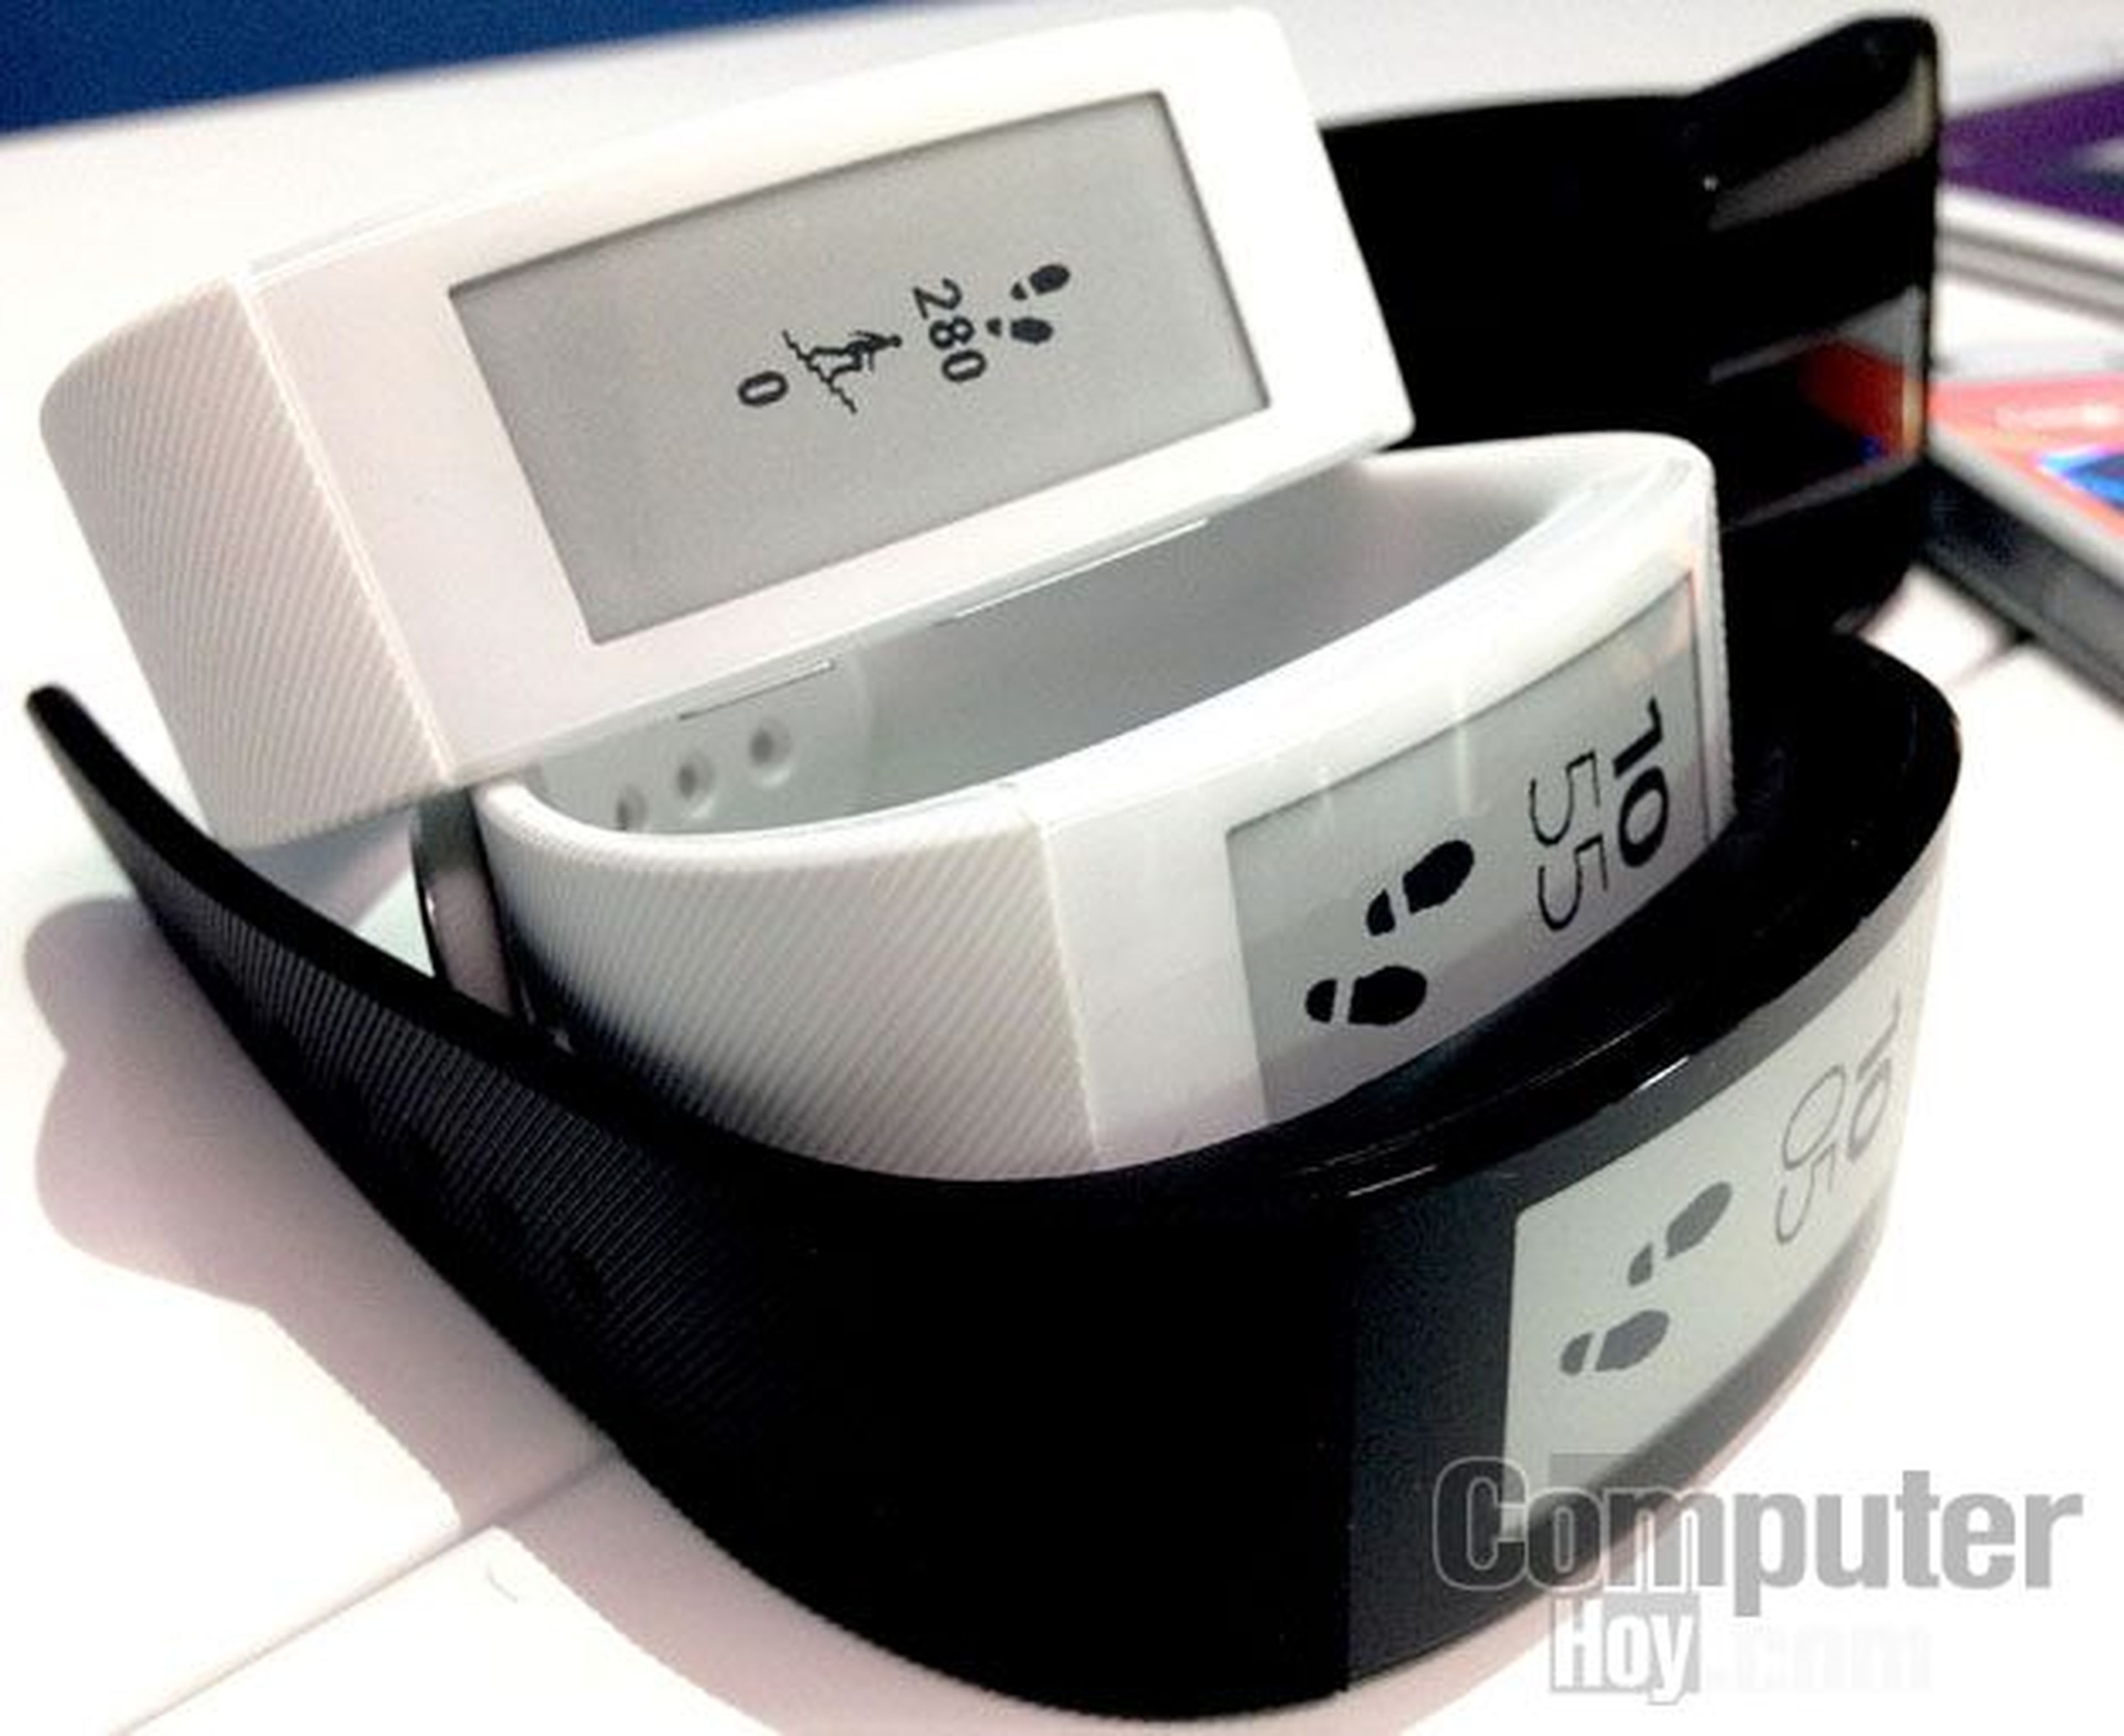 Sony en IFA 2014: nueva gama Xperia Z3 y wearables